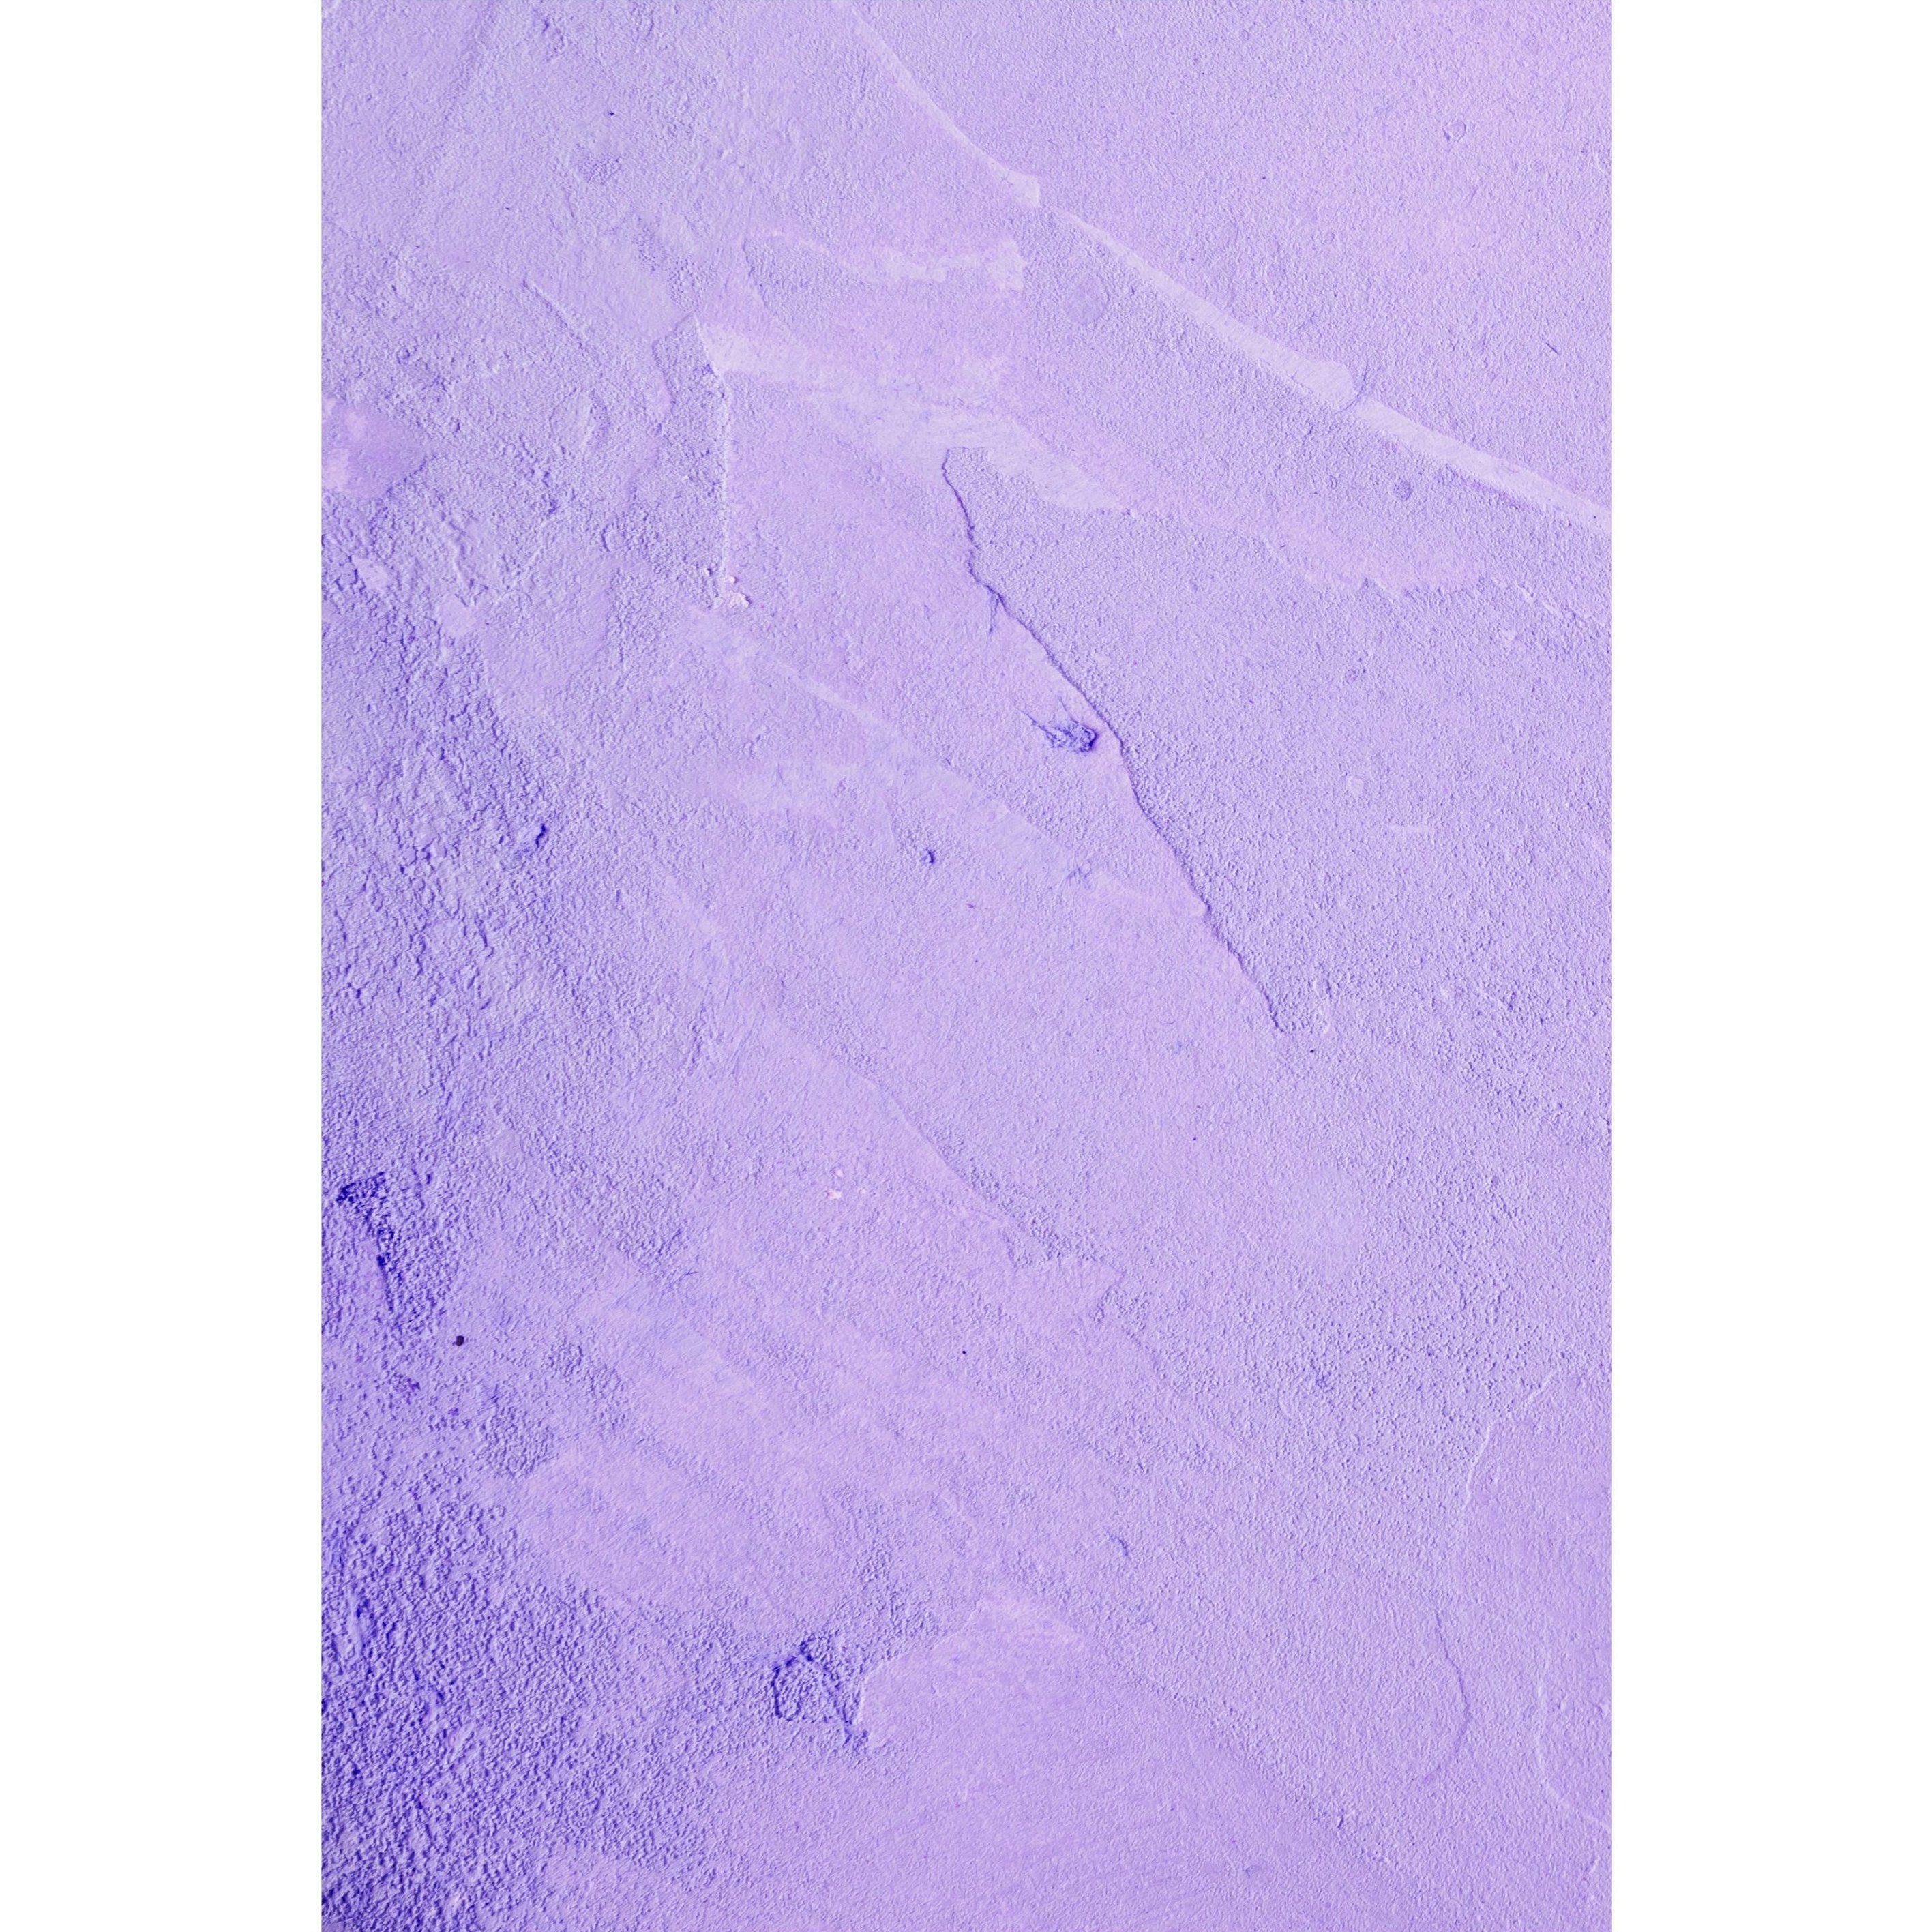 BRESSER Hintergrundtuch Hintergrundstoff mit Fotomotiv 80 x 120 cm - Lila Texture